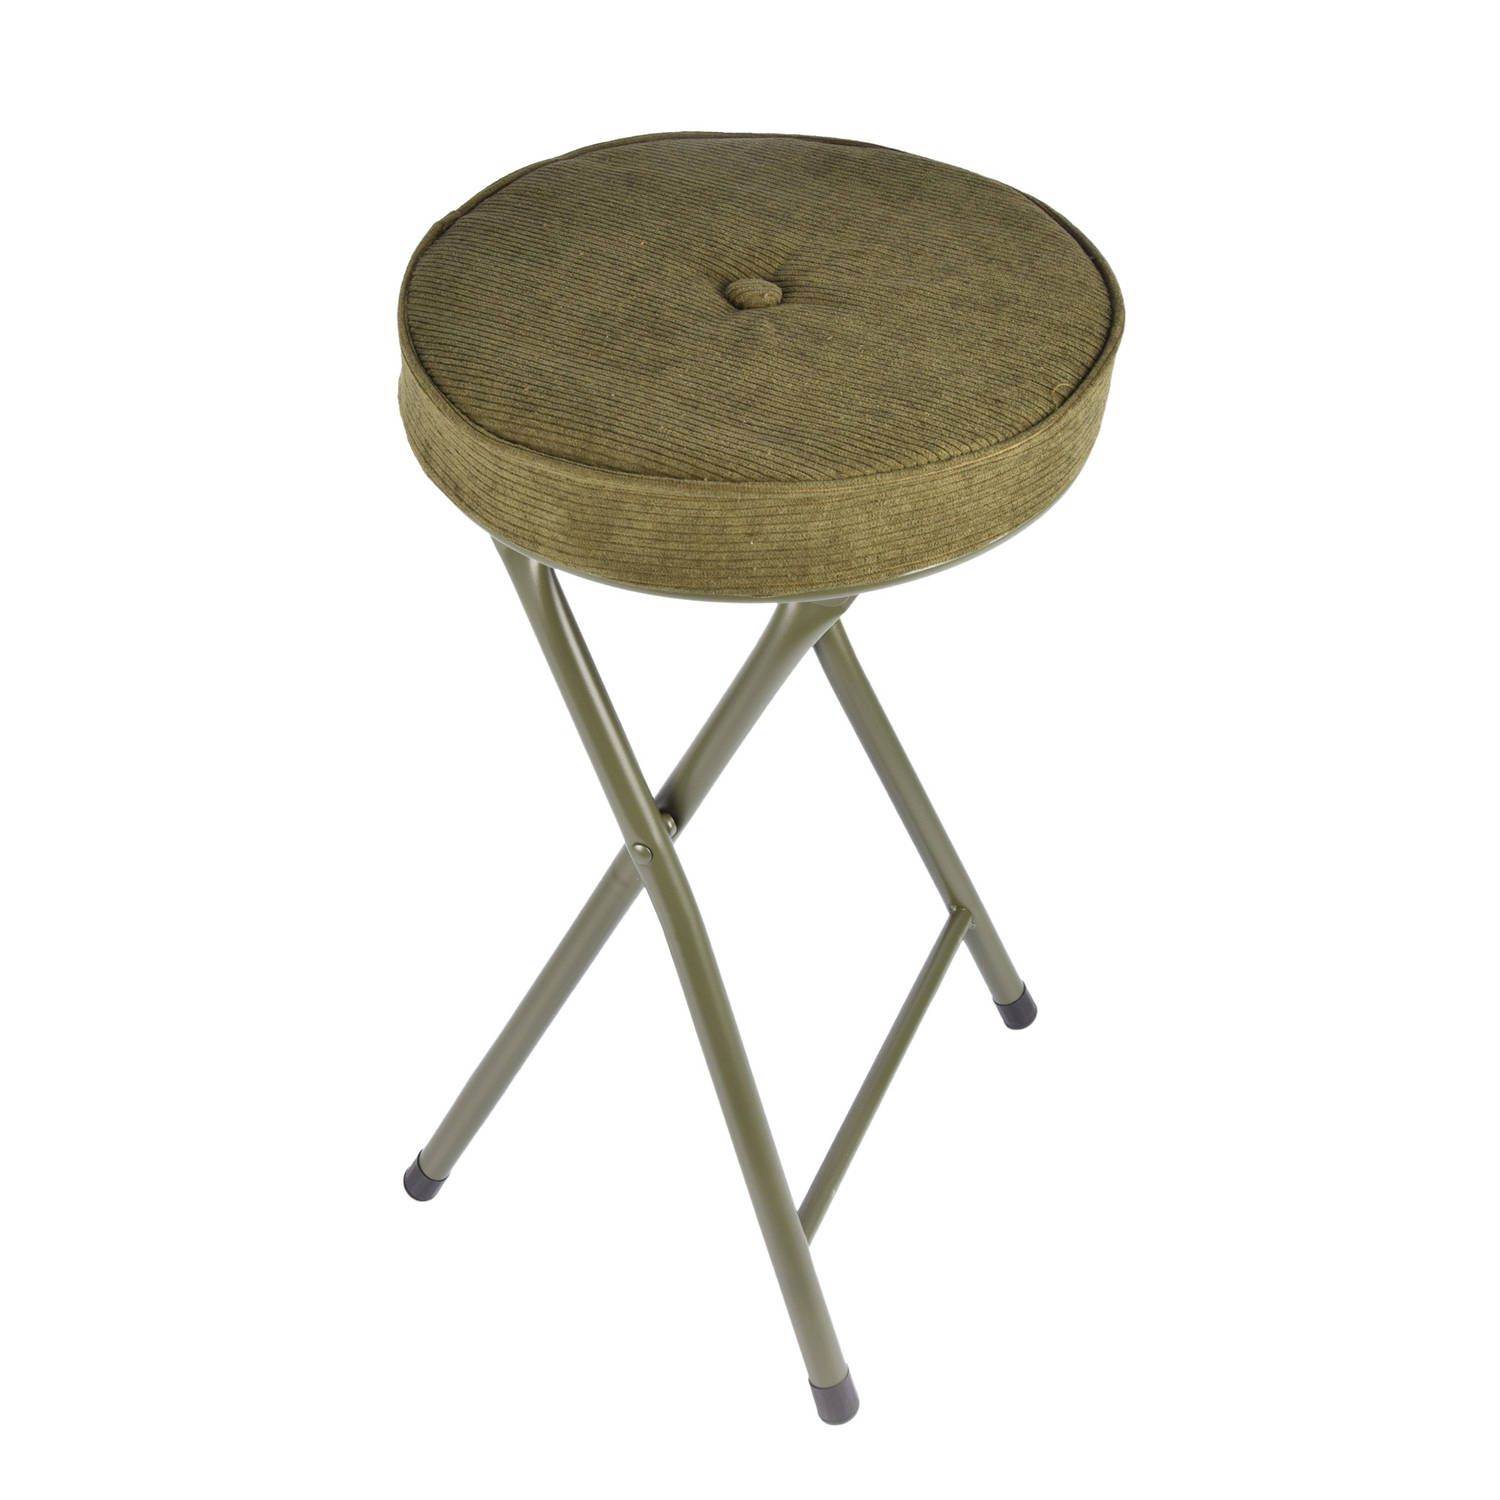 Klapstoel met zithoogte van 45 cm Vouwstoel velvet zitvlak - stoel - tafelstoel- RIBCORD - tafelstoel - klapstoel - Velvet klapstoel - Luxe klapstoel - Met kussentjes - FLUWEEL- St